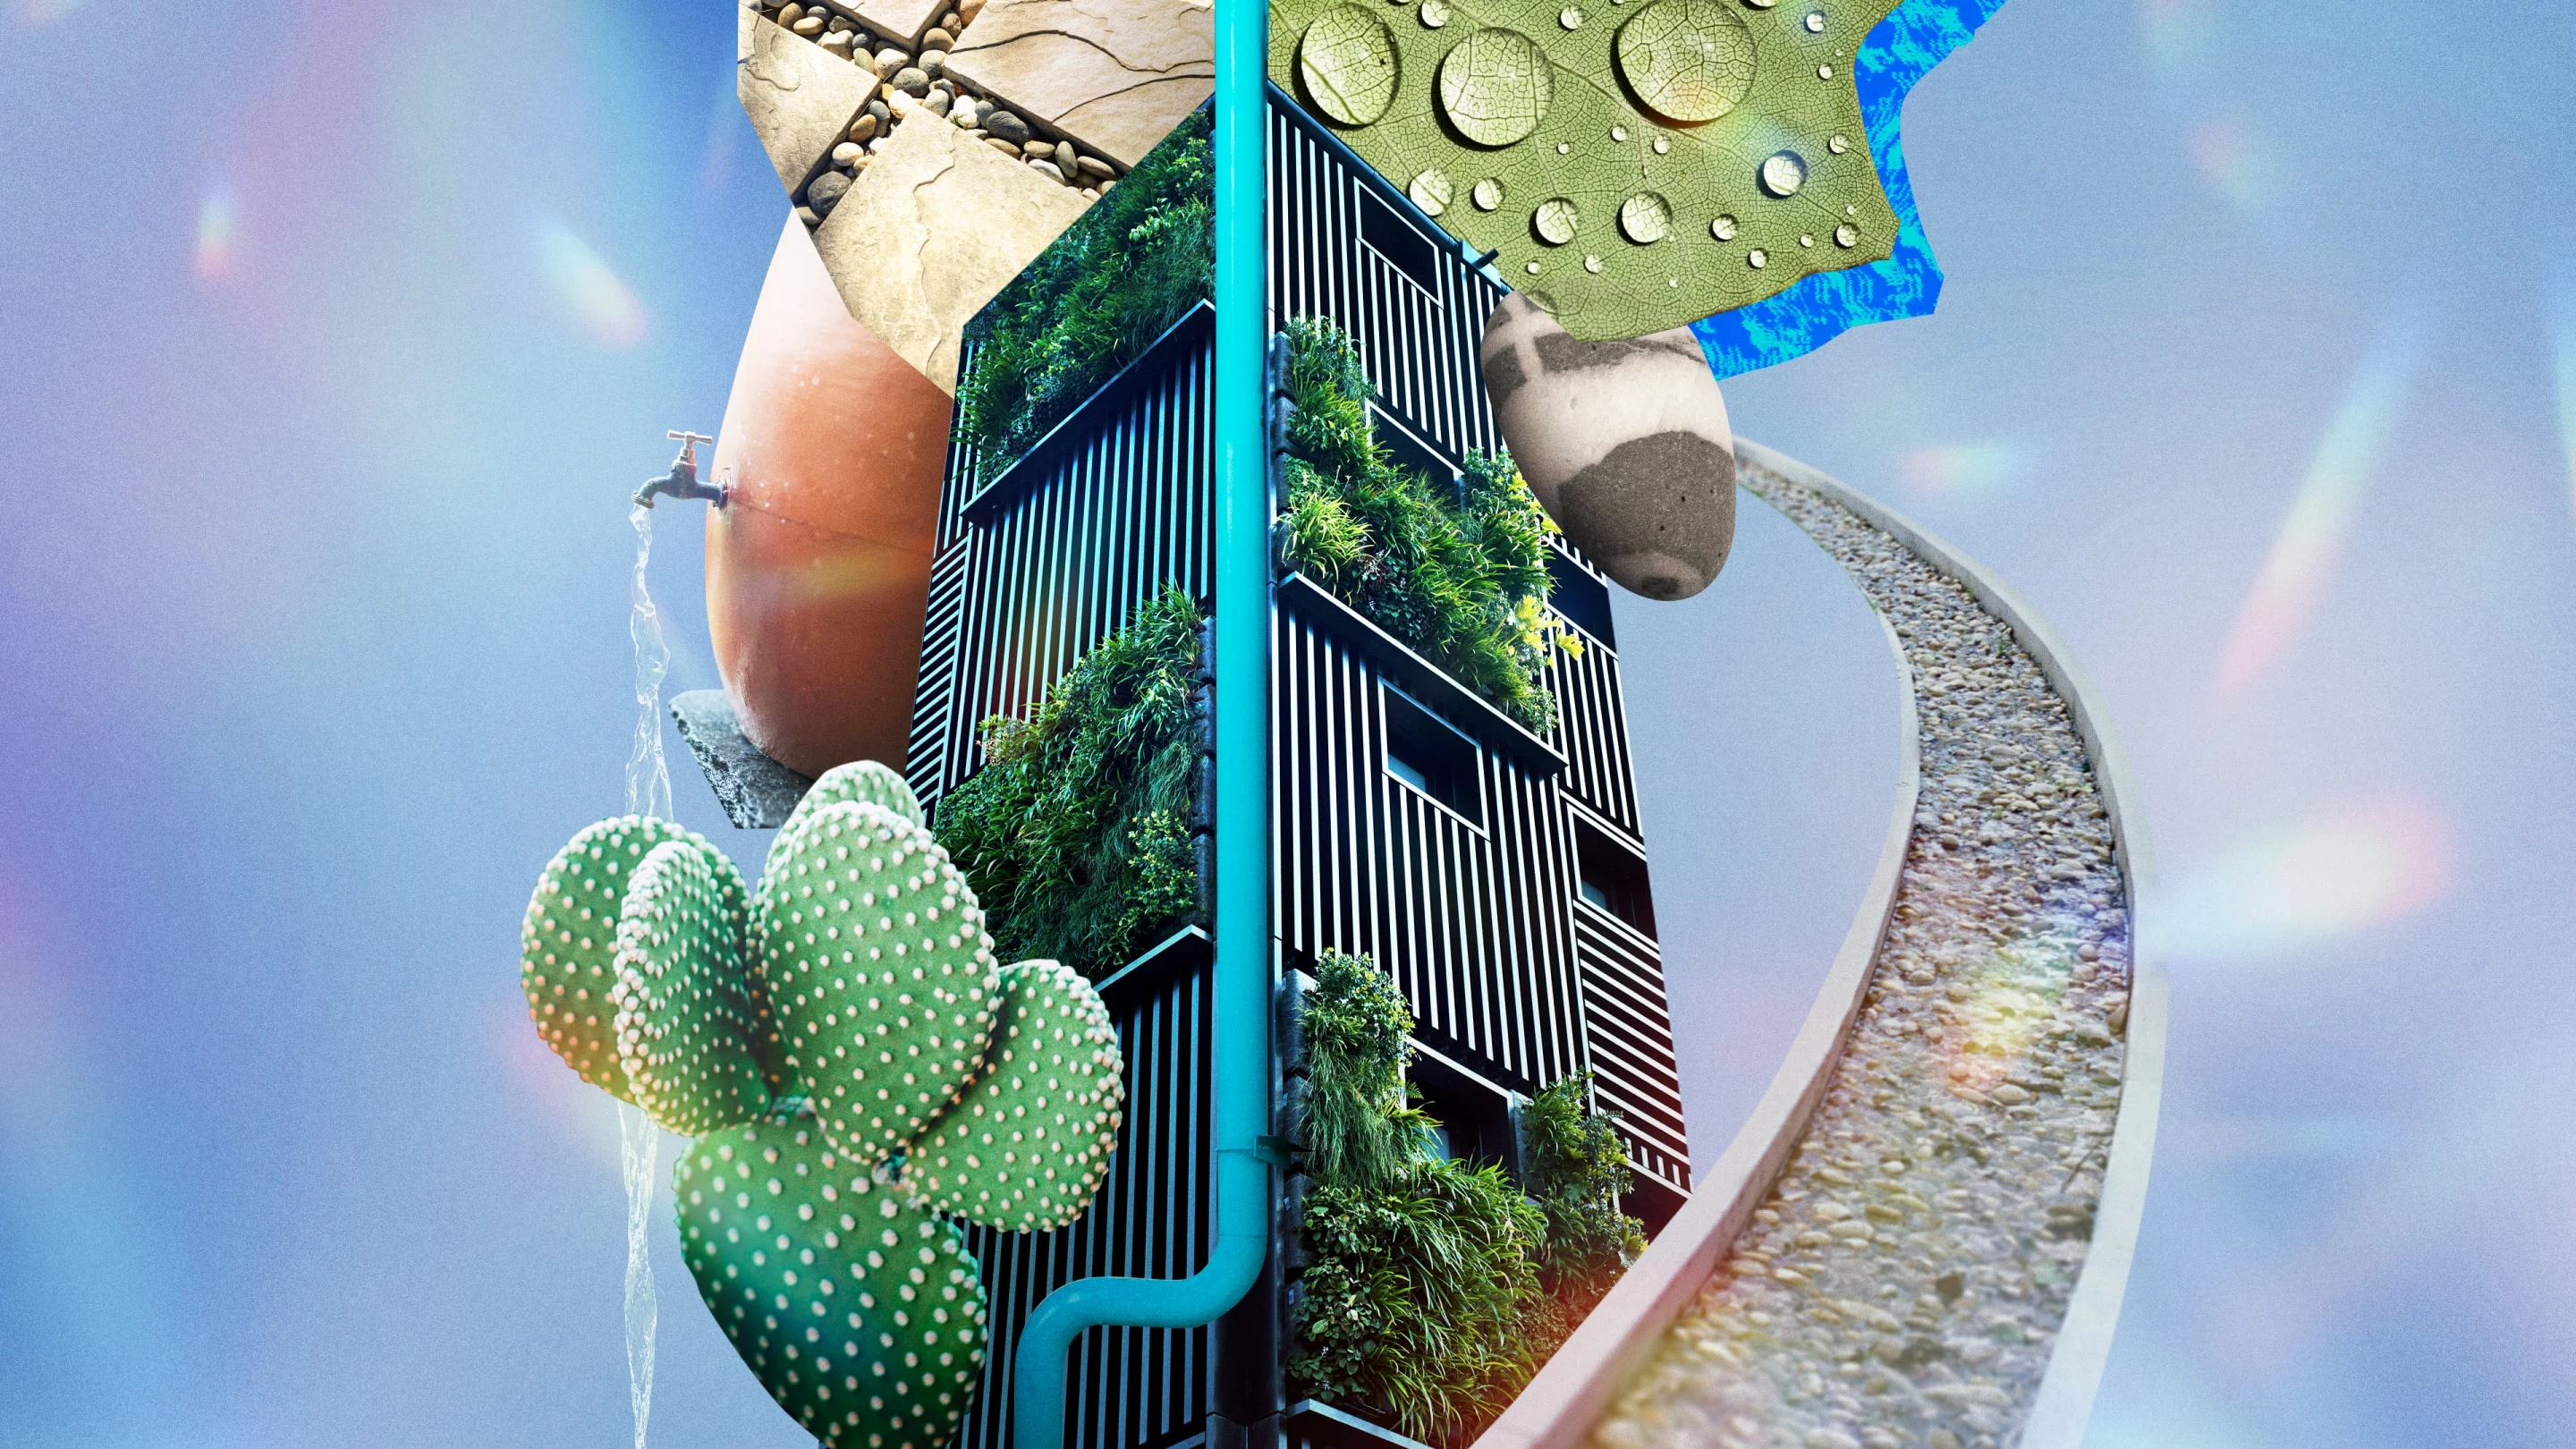 Un collage di immagini raffiguranti gocce d'acqua su una foglia, un sentiero con dei ciottoli, un cactus, un getto d'acqua e un giardino verticale.